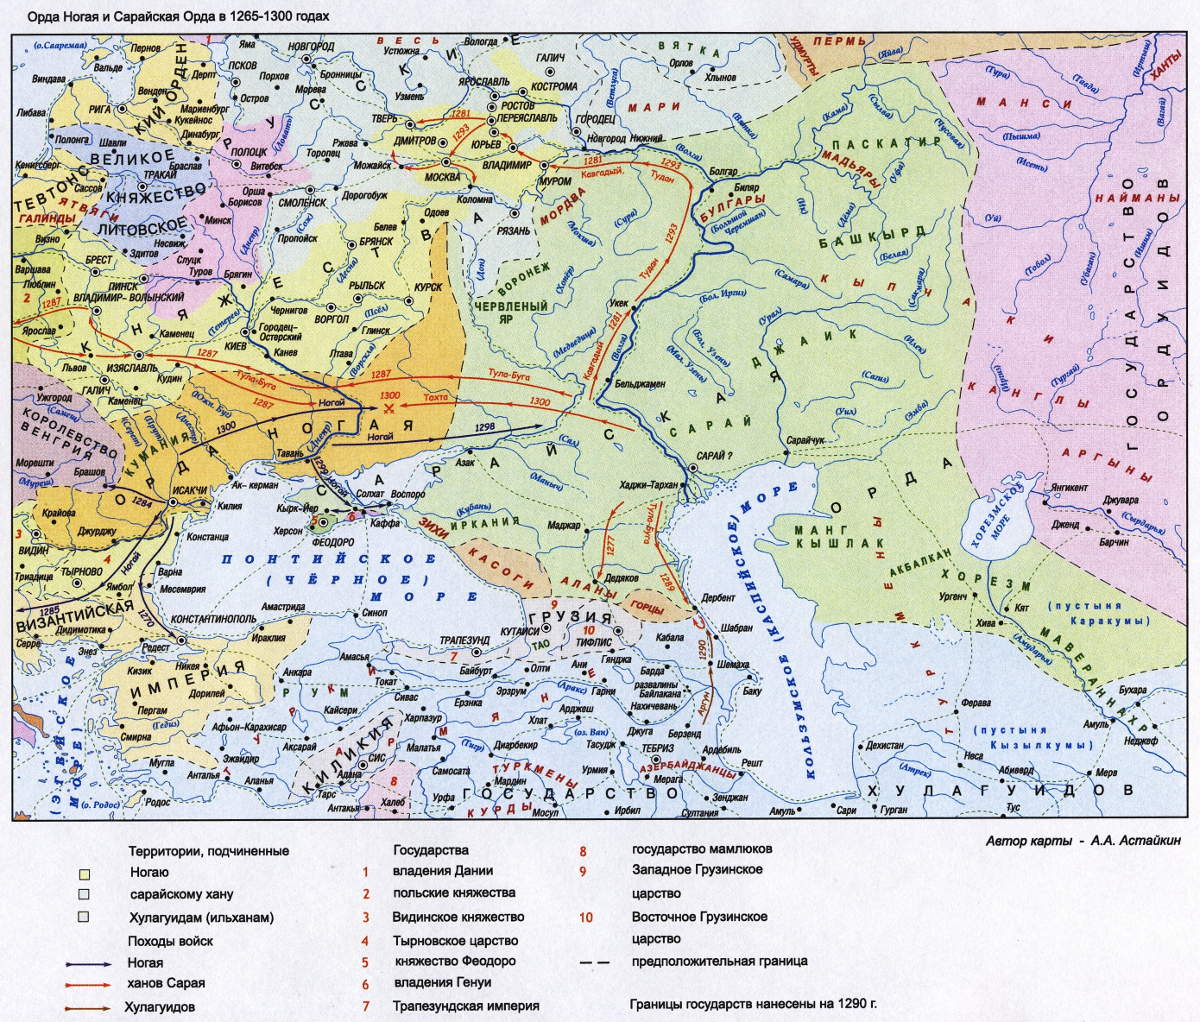 Золотая Орда, 1265-1300 года